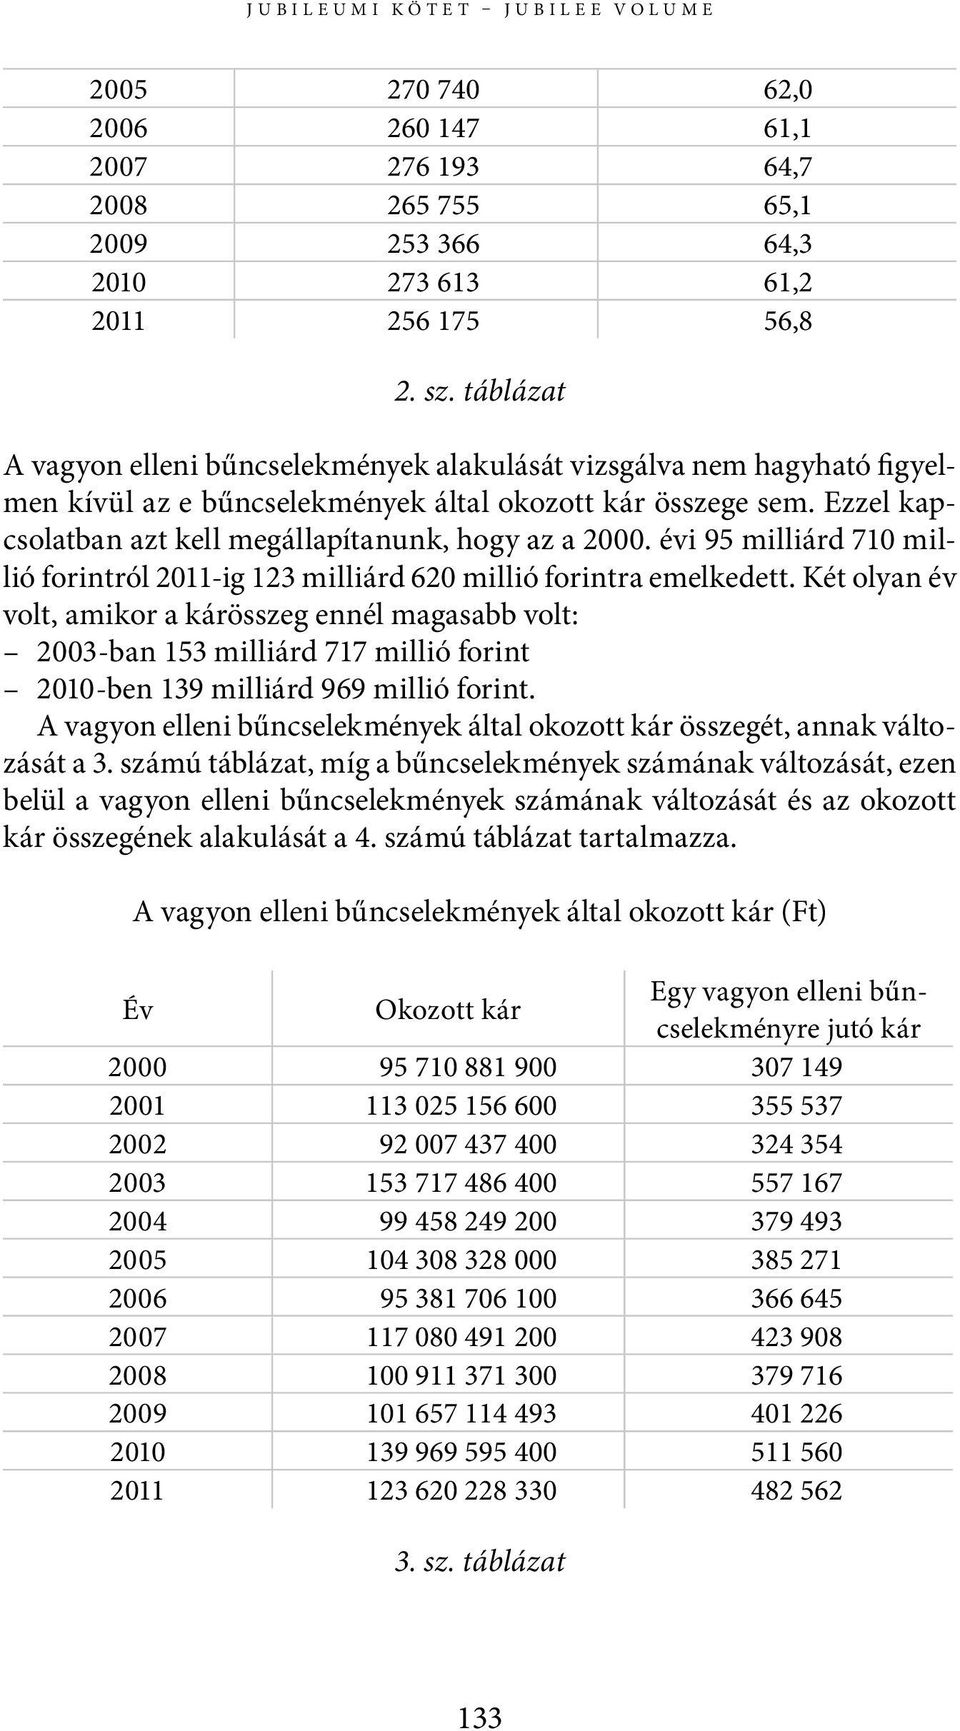 Ezzel kapcsolatban azt kell megállapítanunk, hogy az a 2000. évi 95 milliárd 710 millió forintról 2011-ig 123 milliárd 620 millió forintra emelkedett.